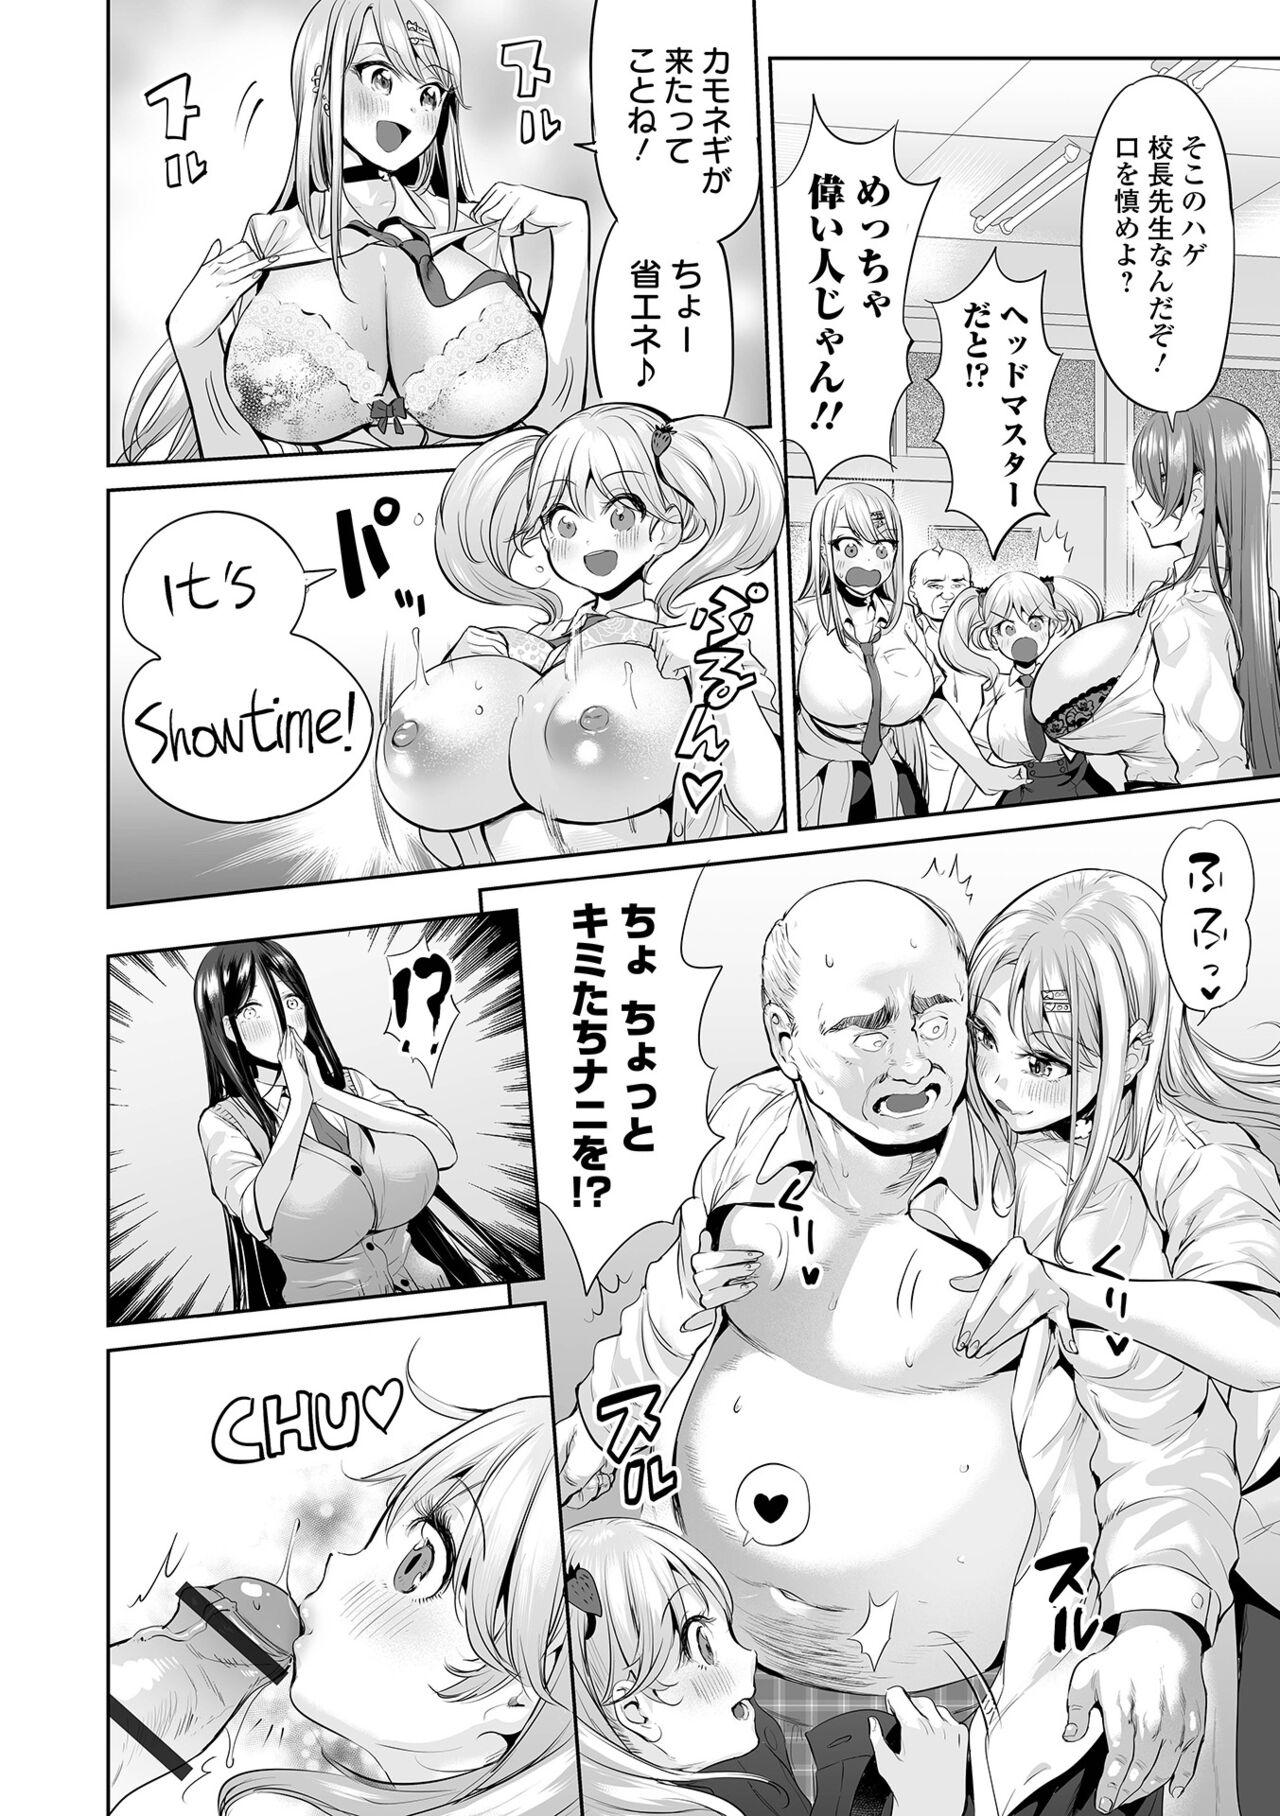 Fake Tits Ike! Bitch seito-kai 18yo - Page 10